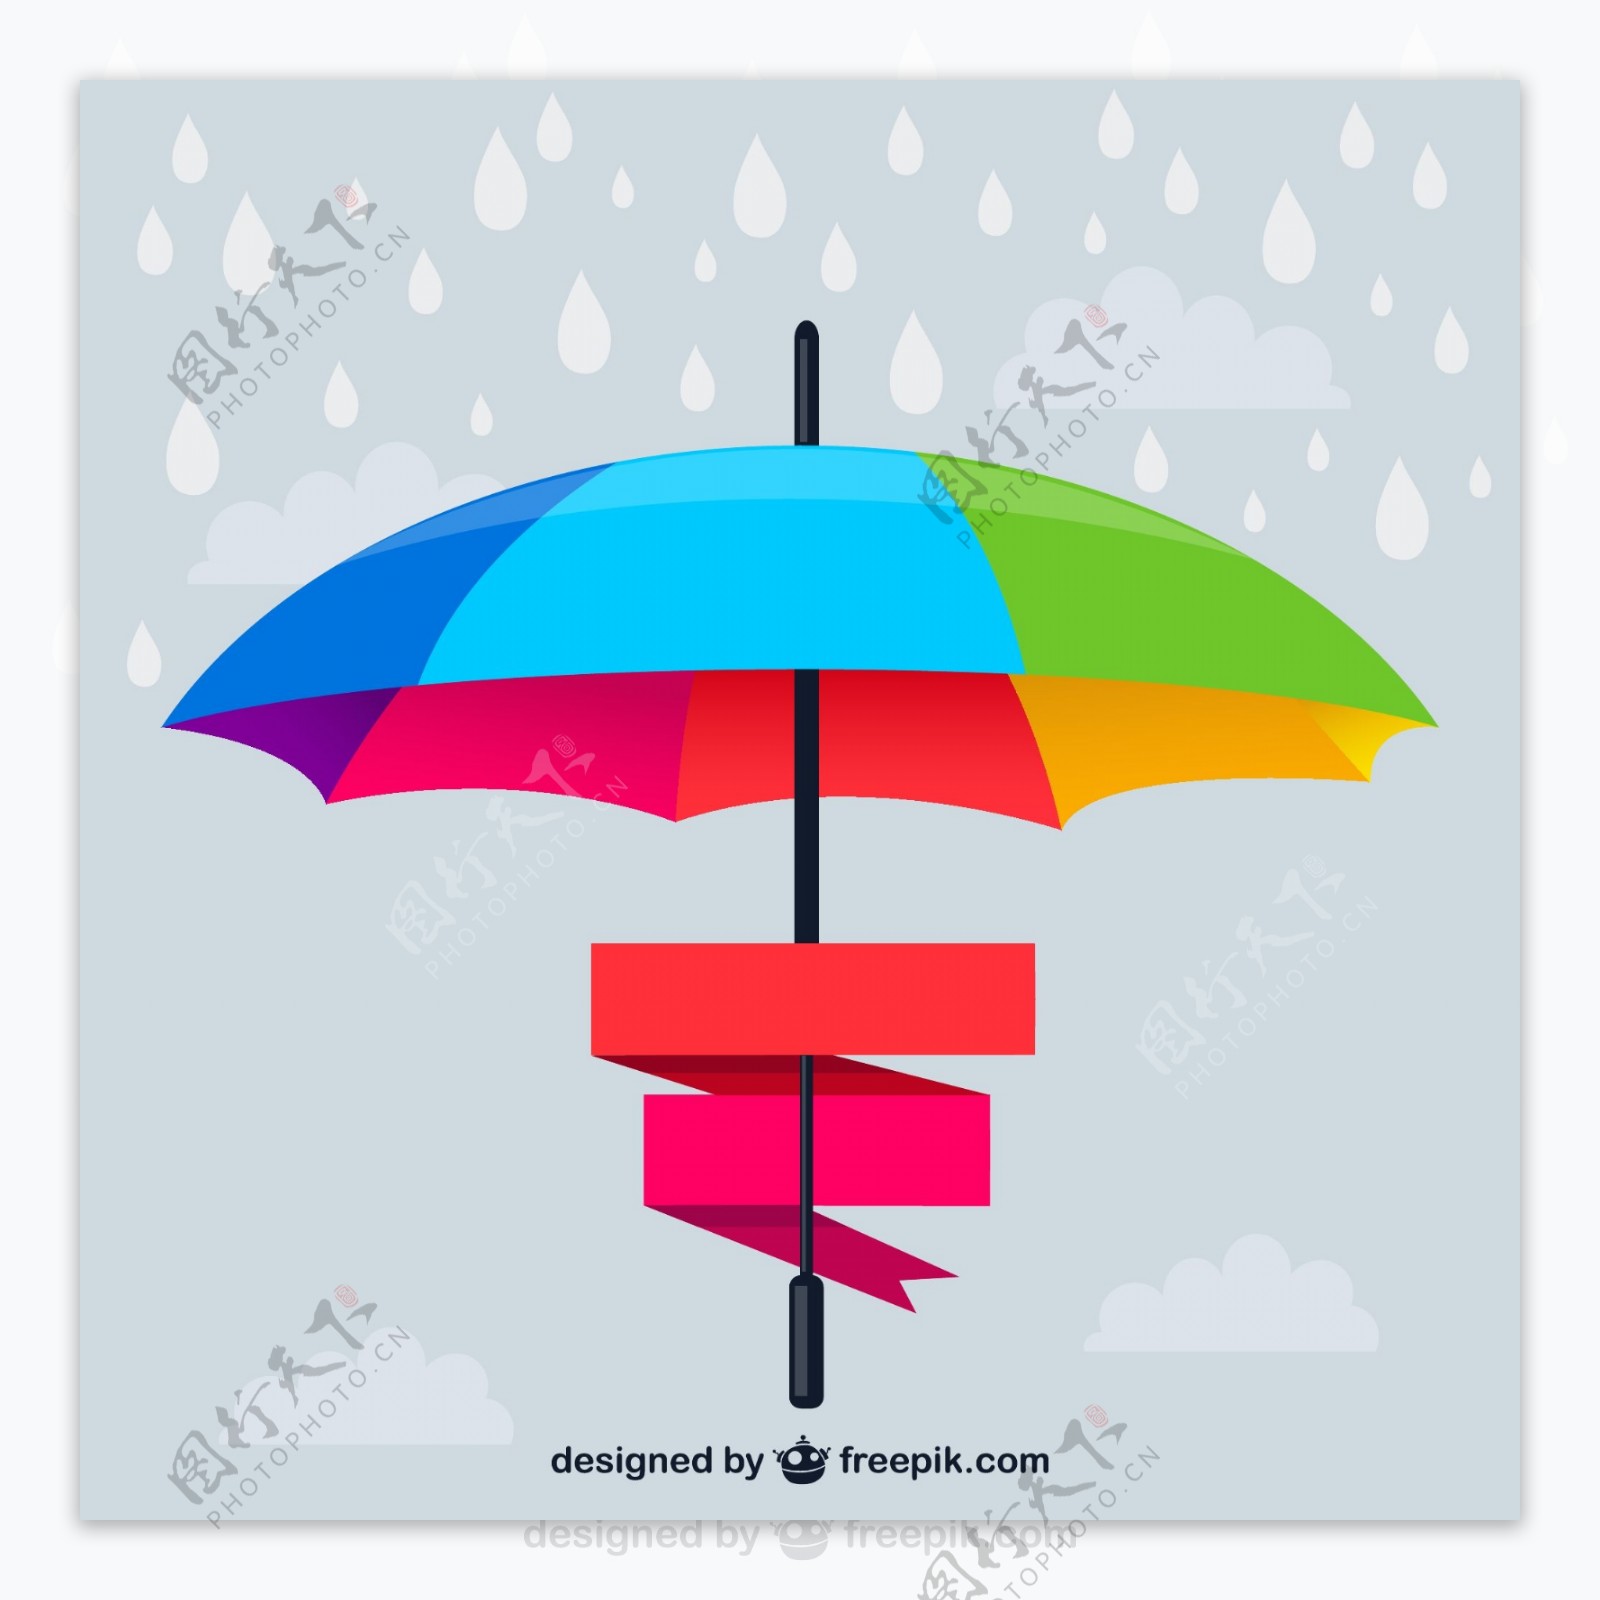 彩虹色雨伞设计矢量素材